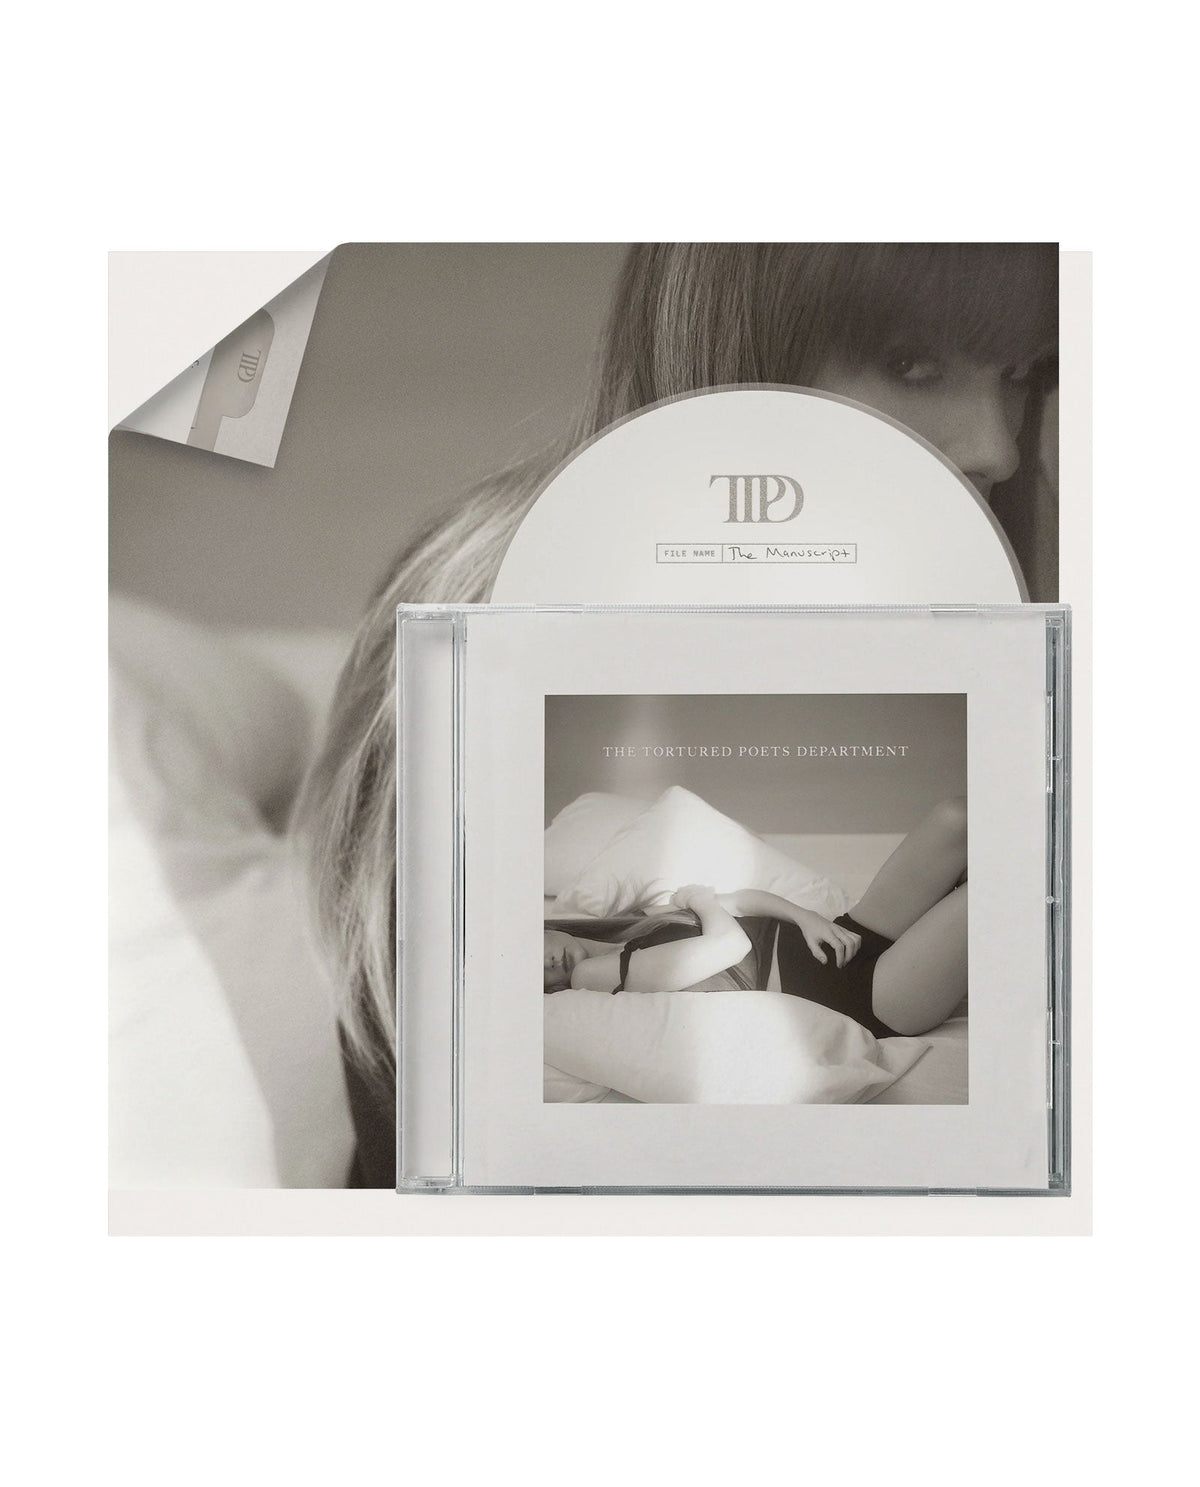 Taylor Swift - CD "THE TORTURED POETS DEPARTMENT" + Bonus track “The Manuscript" - D2fy · Rocktud - D2fy